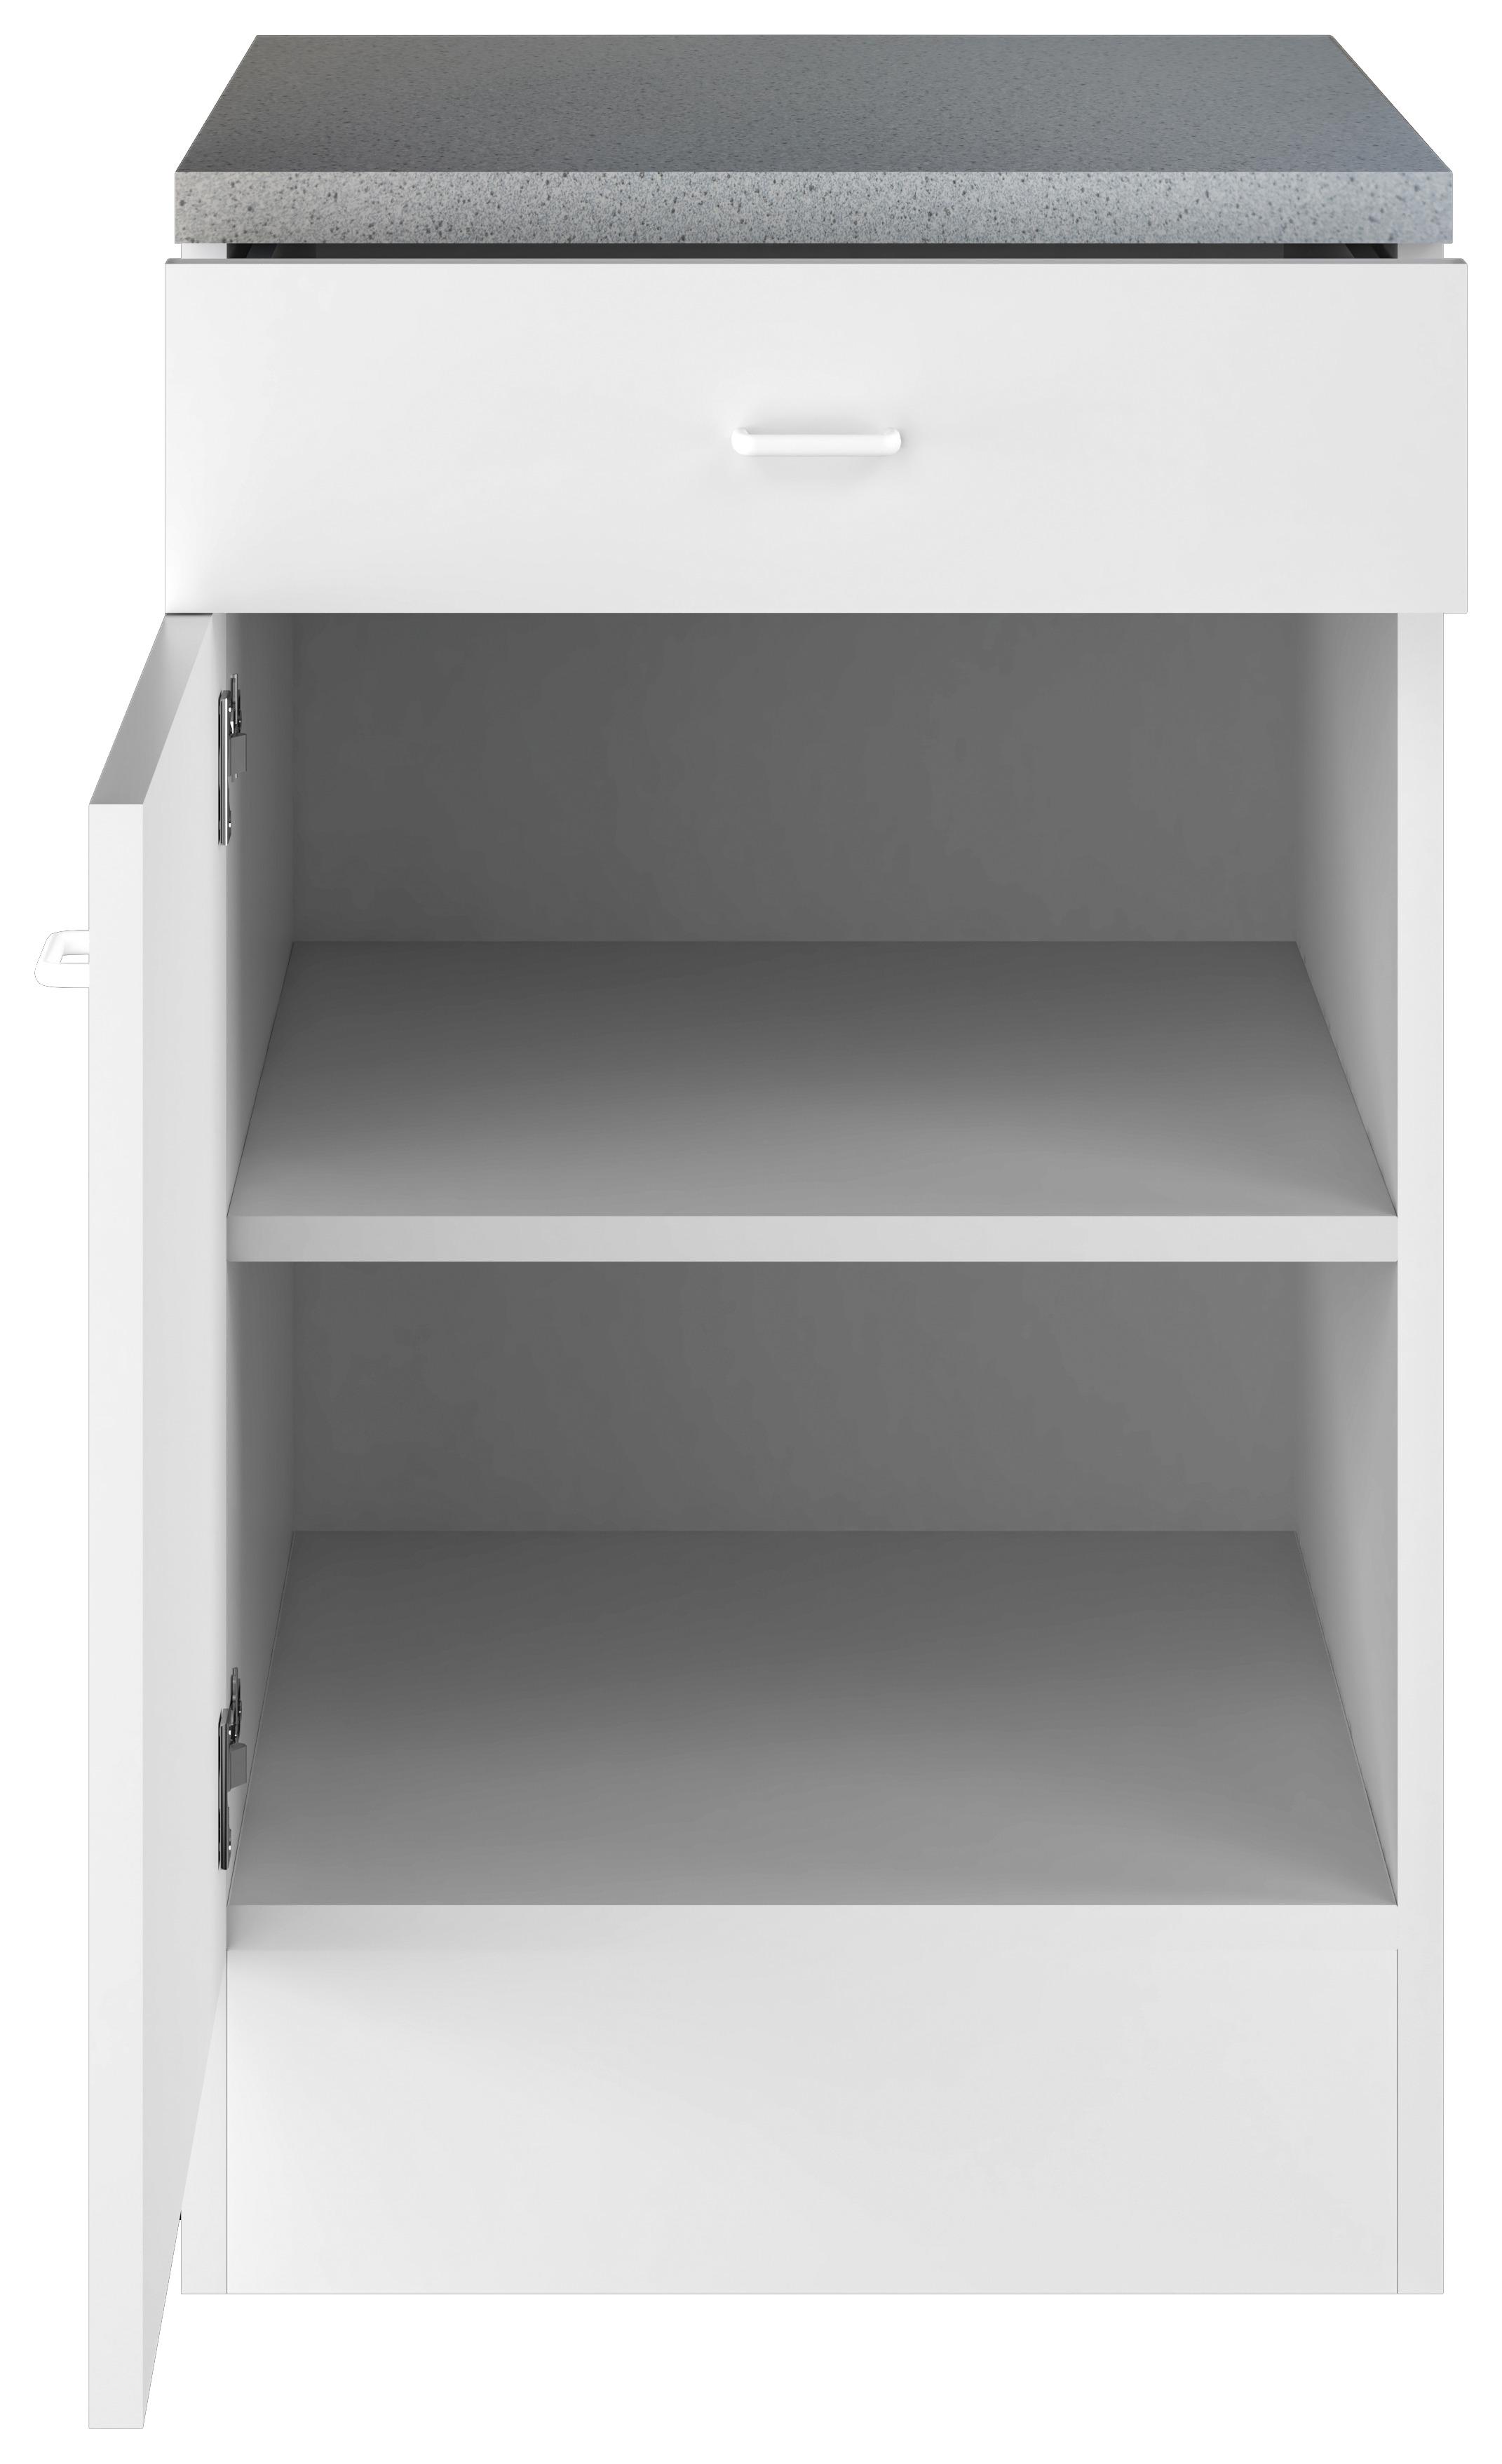 Kuchyňská Spodní Skříňka - bílá, Konvenční, kompozitní dřevo/plast (50/85/47cm)